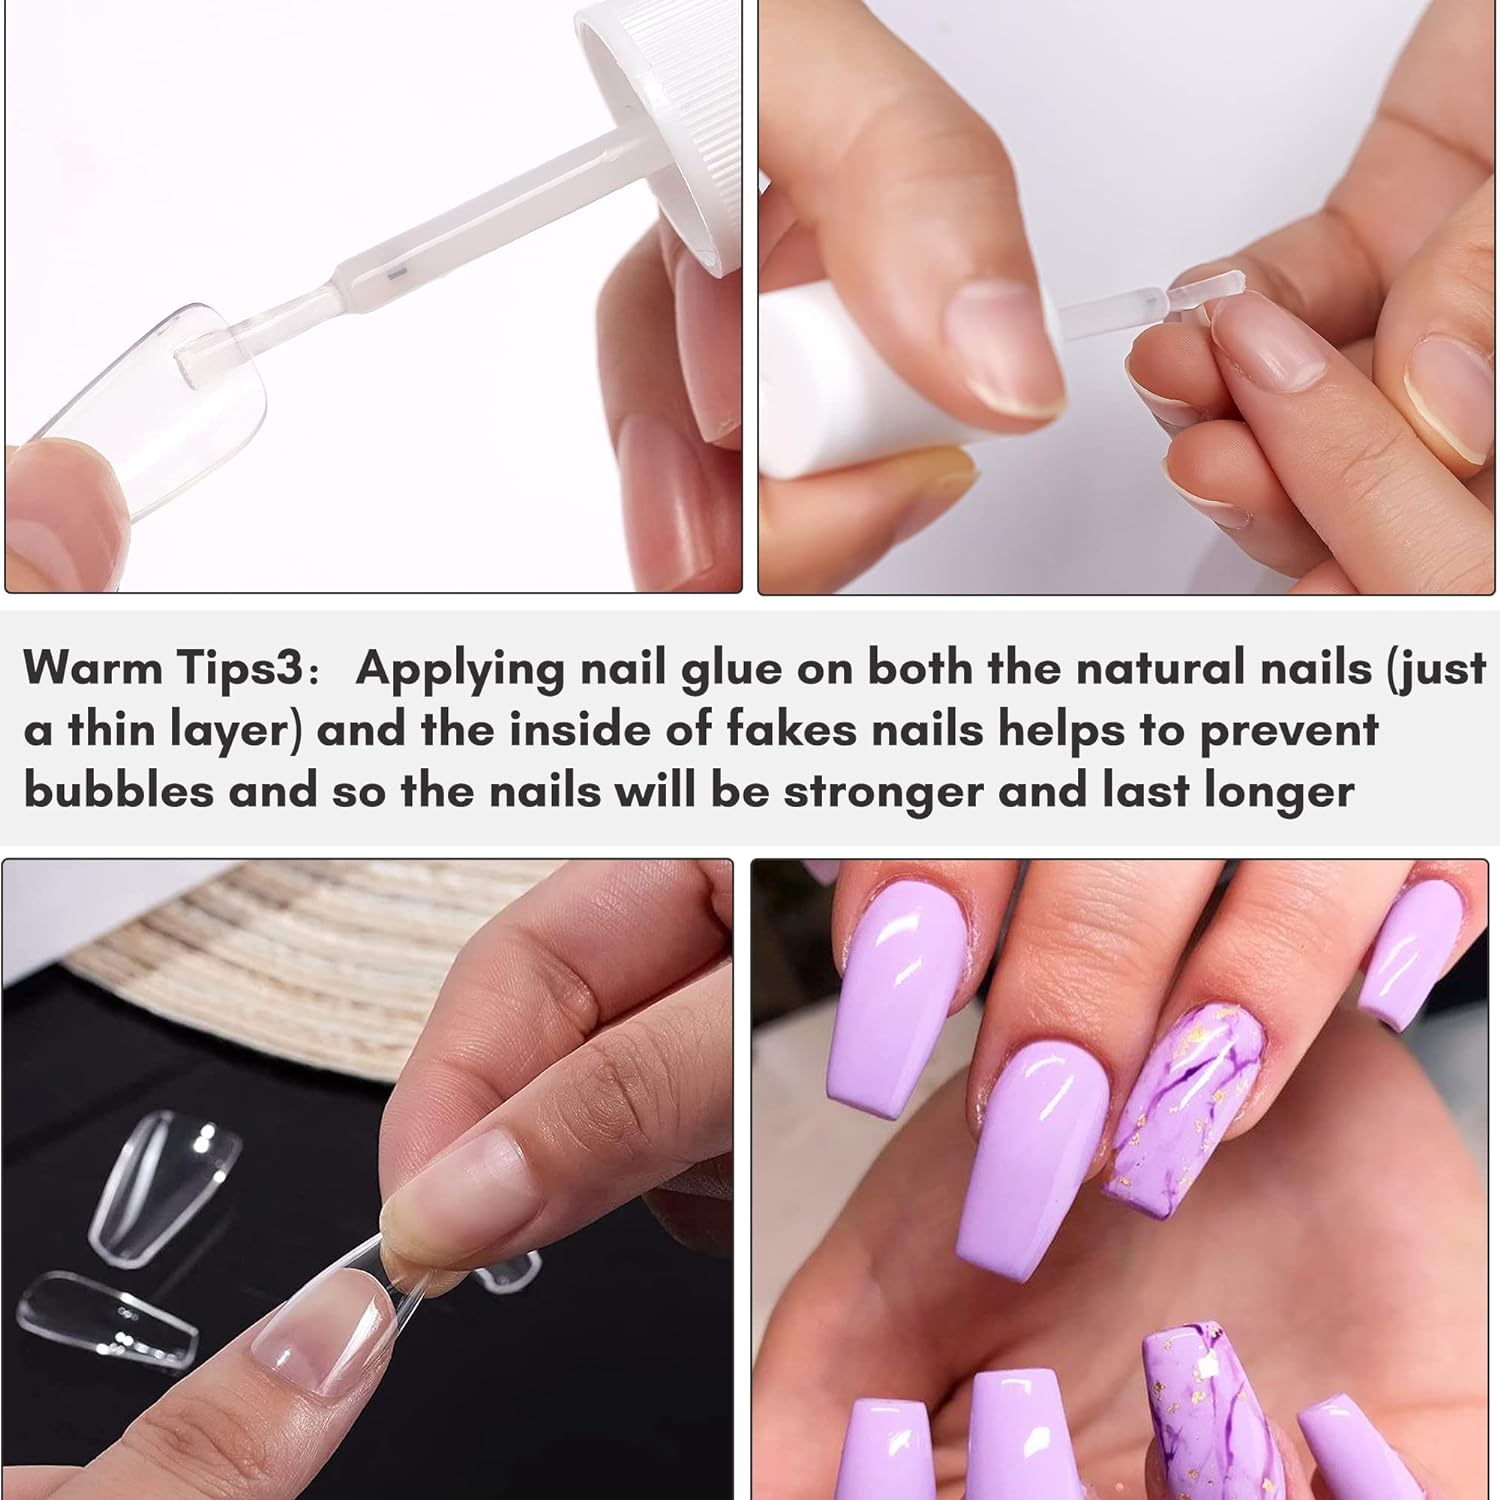 DIY FAKE NAILS | How to attach/remove | NO NAIL GLUE (No Acrylic) @Kikay...  | Fake nails, Acrylic nail shapes, Kiss glue on nails